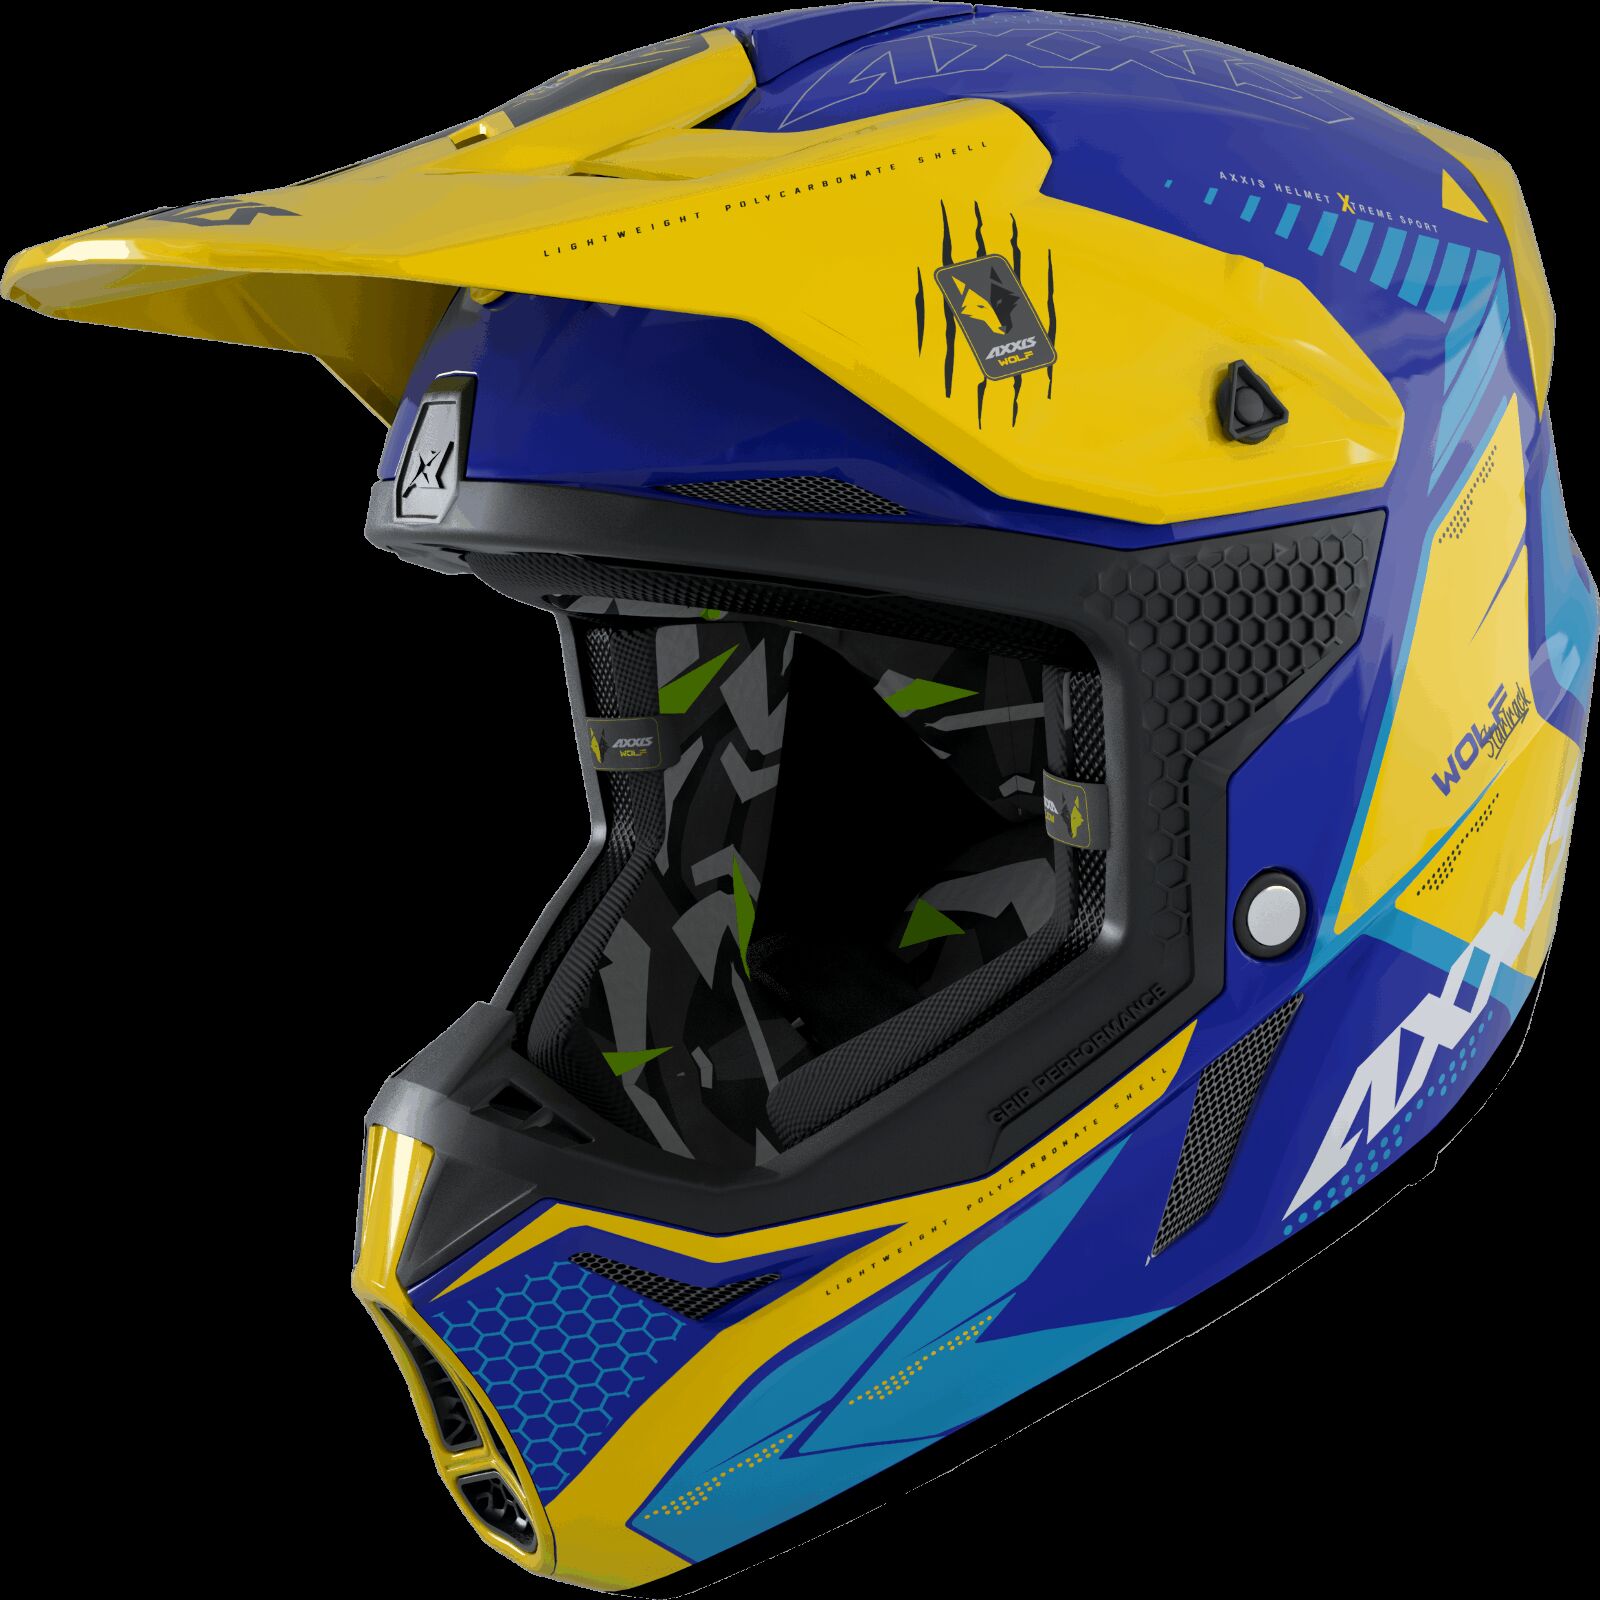 Obrázek produktu Motokrosová helma AXXIS WOLF ABS star track c17 matná modrá L 425874121736